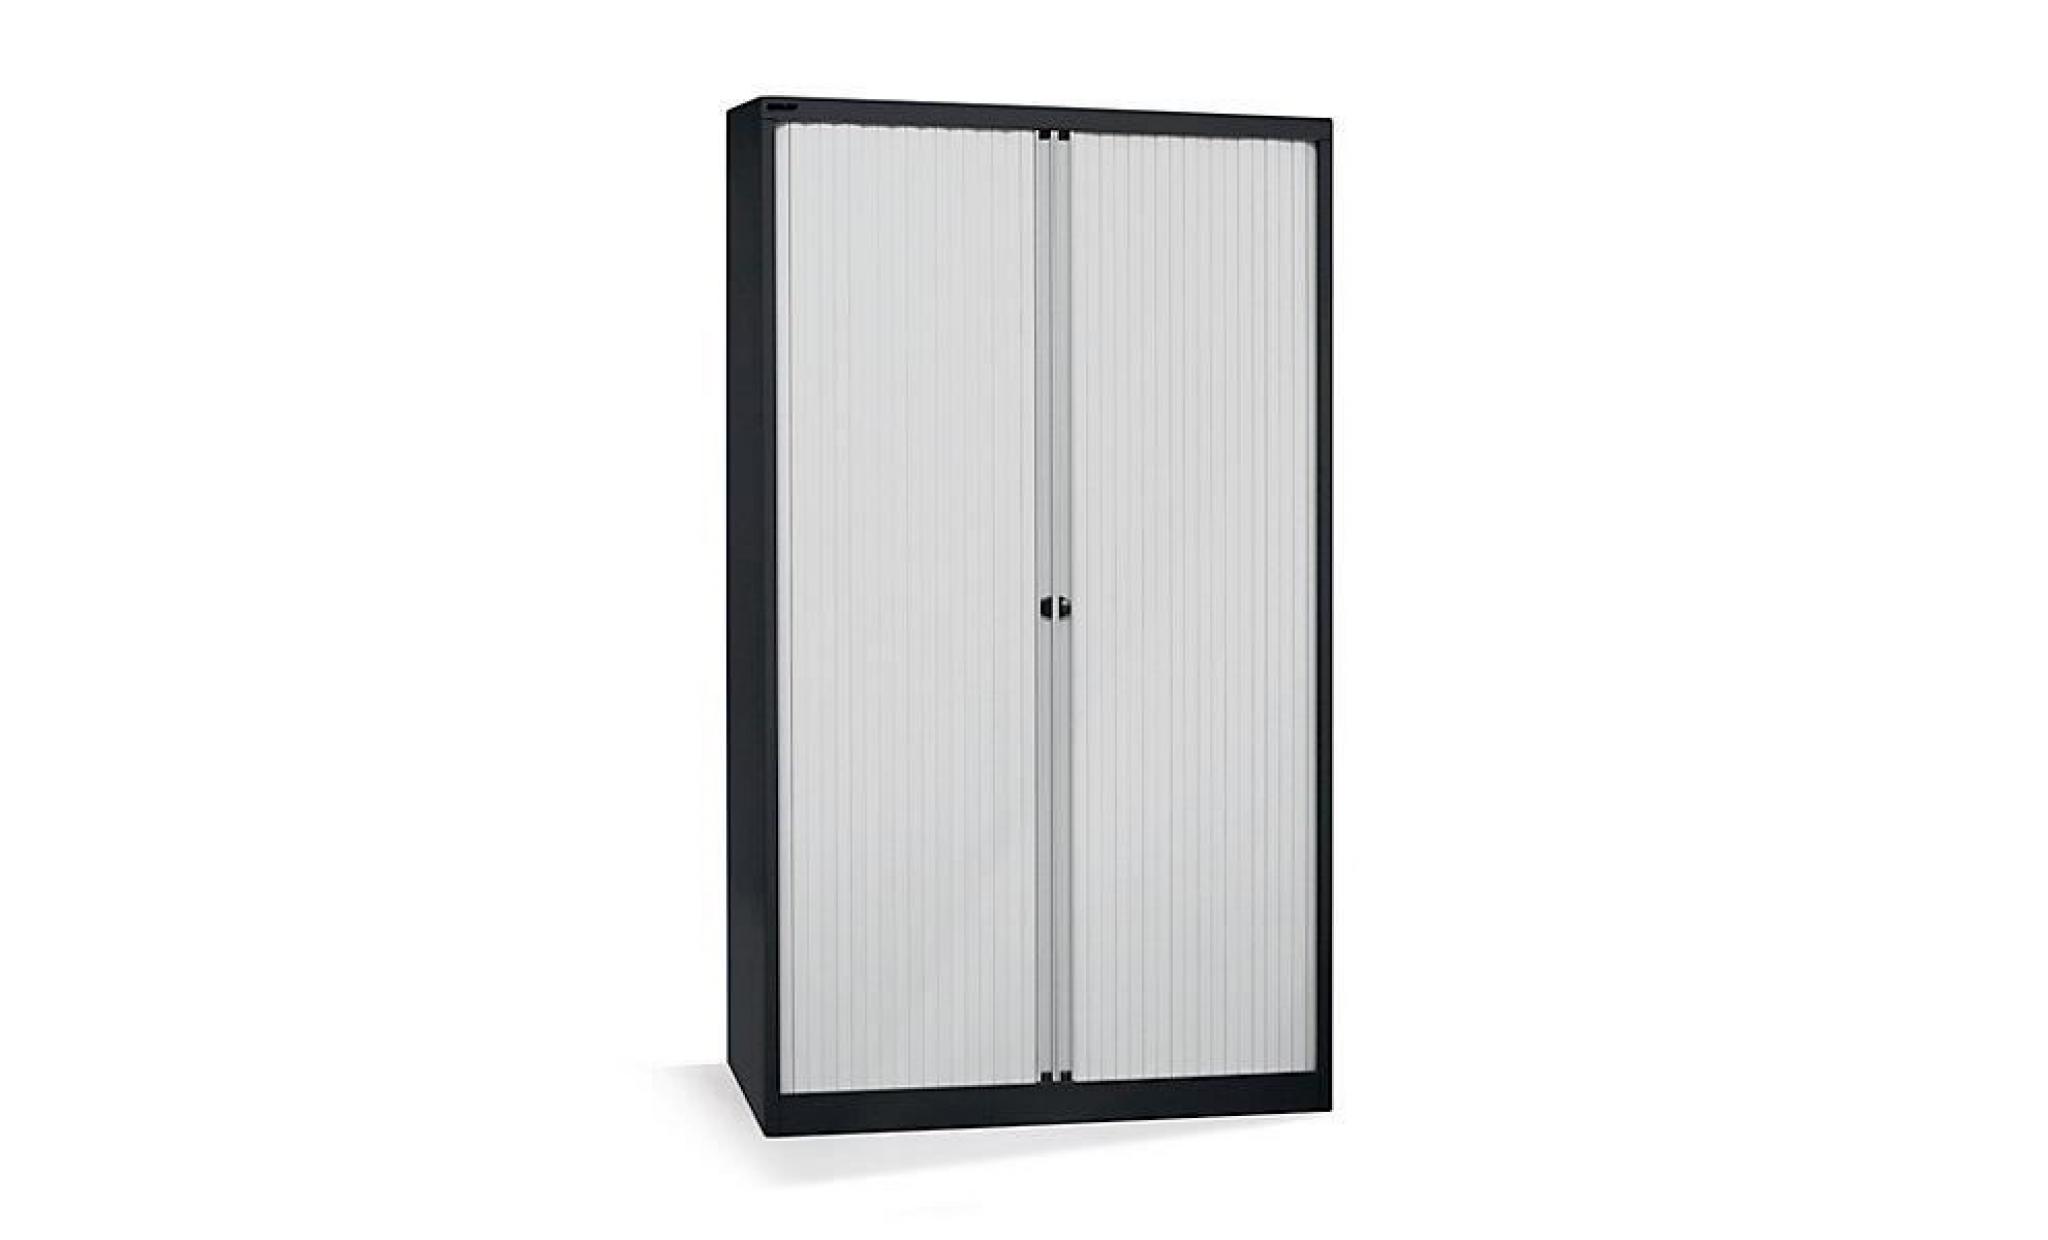 bisley armoire à rideaux   horizontal, noir profond / gris clair h x l 1030 x 1200 mm, 2 tablettes   armoire basse armoire de bureau